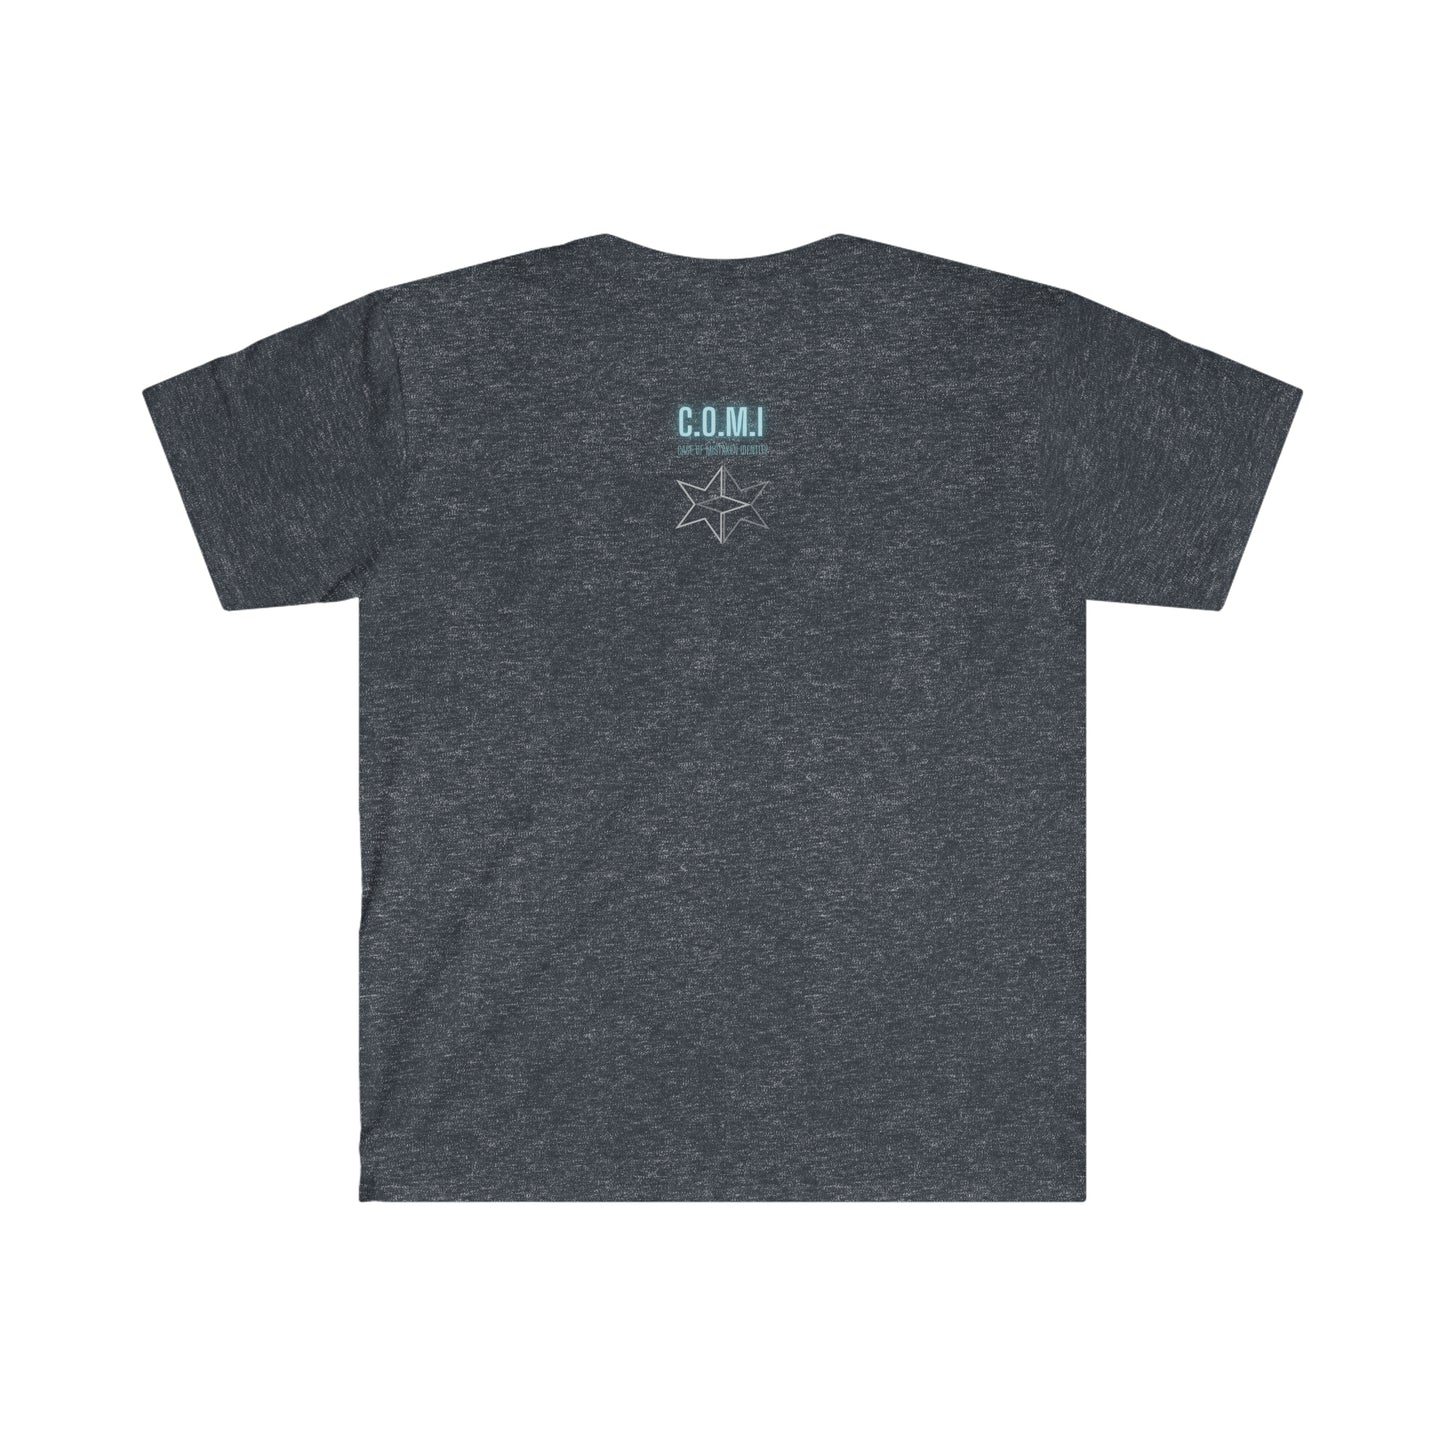 Eleanor - Unisex Softstyle T-Shirt